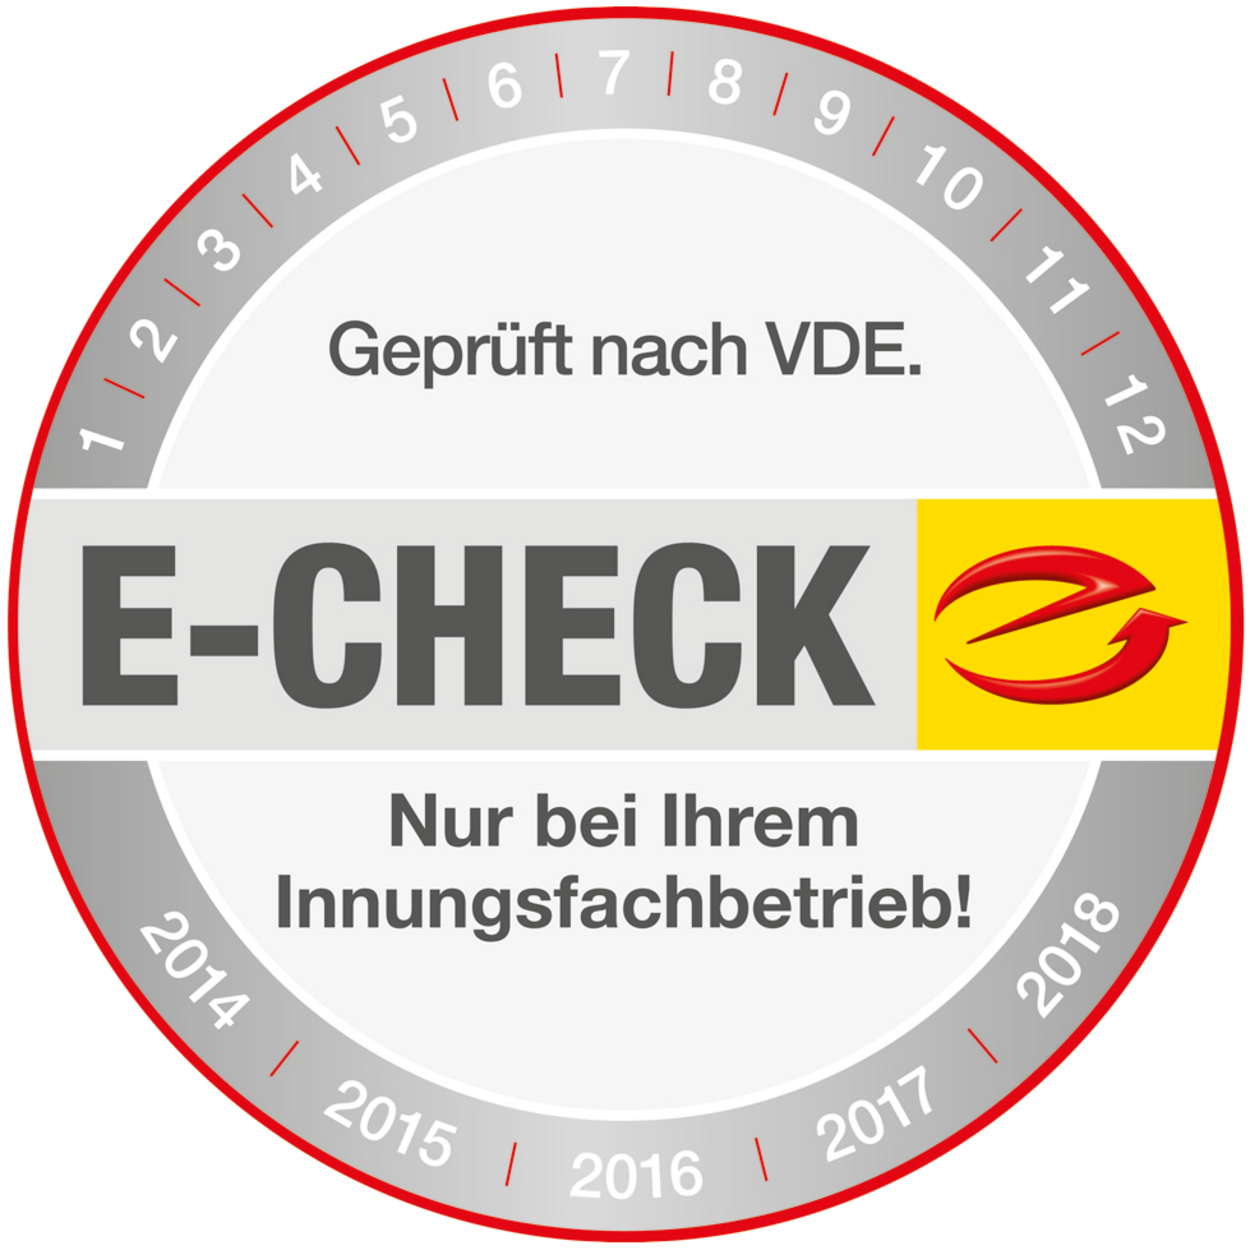 Der E-Check bei Elektro Schmid in Roding